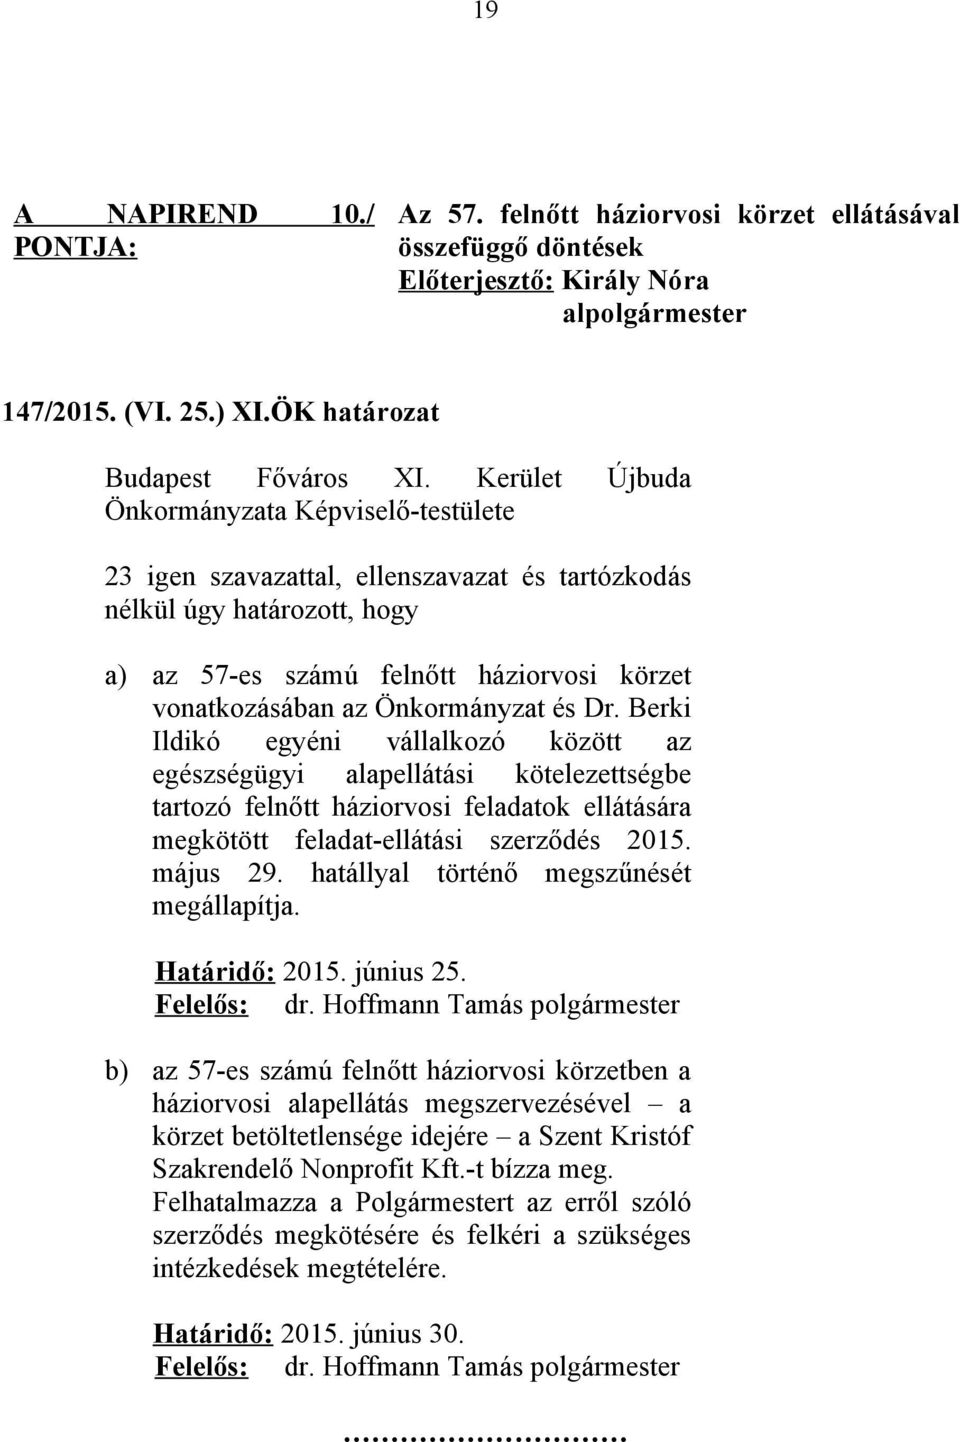 Berki Ildikó egyéni vállalkozó között az egészségügyi alapellátási kötelezettségbe tartozó felnőtt háziorvosi feladatok ellátására megkötött feladat-ellátási szerződés 2015. május 29.